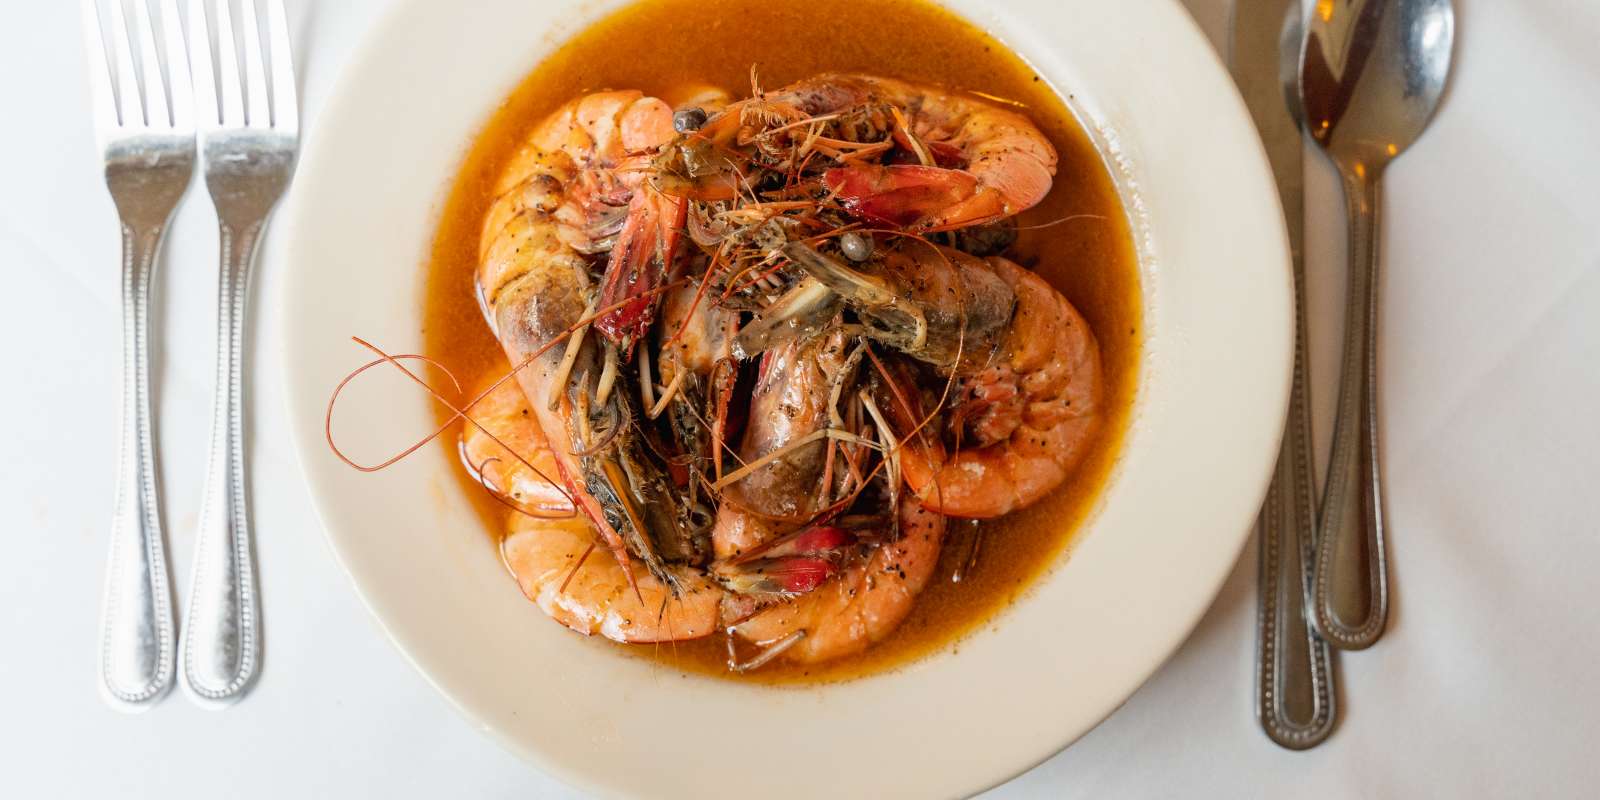 Pascals Manale's BBQ Shrimp